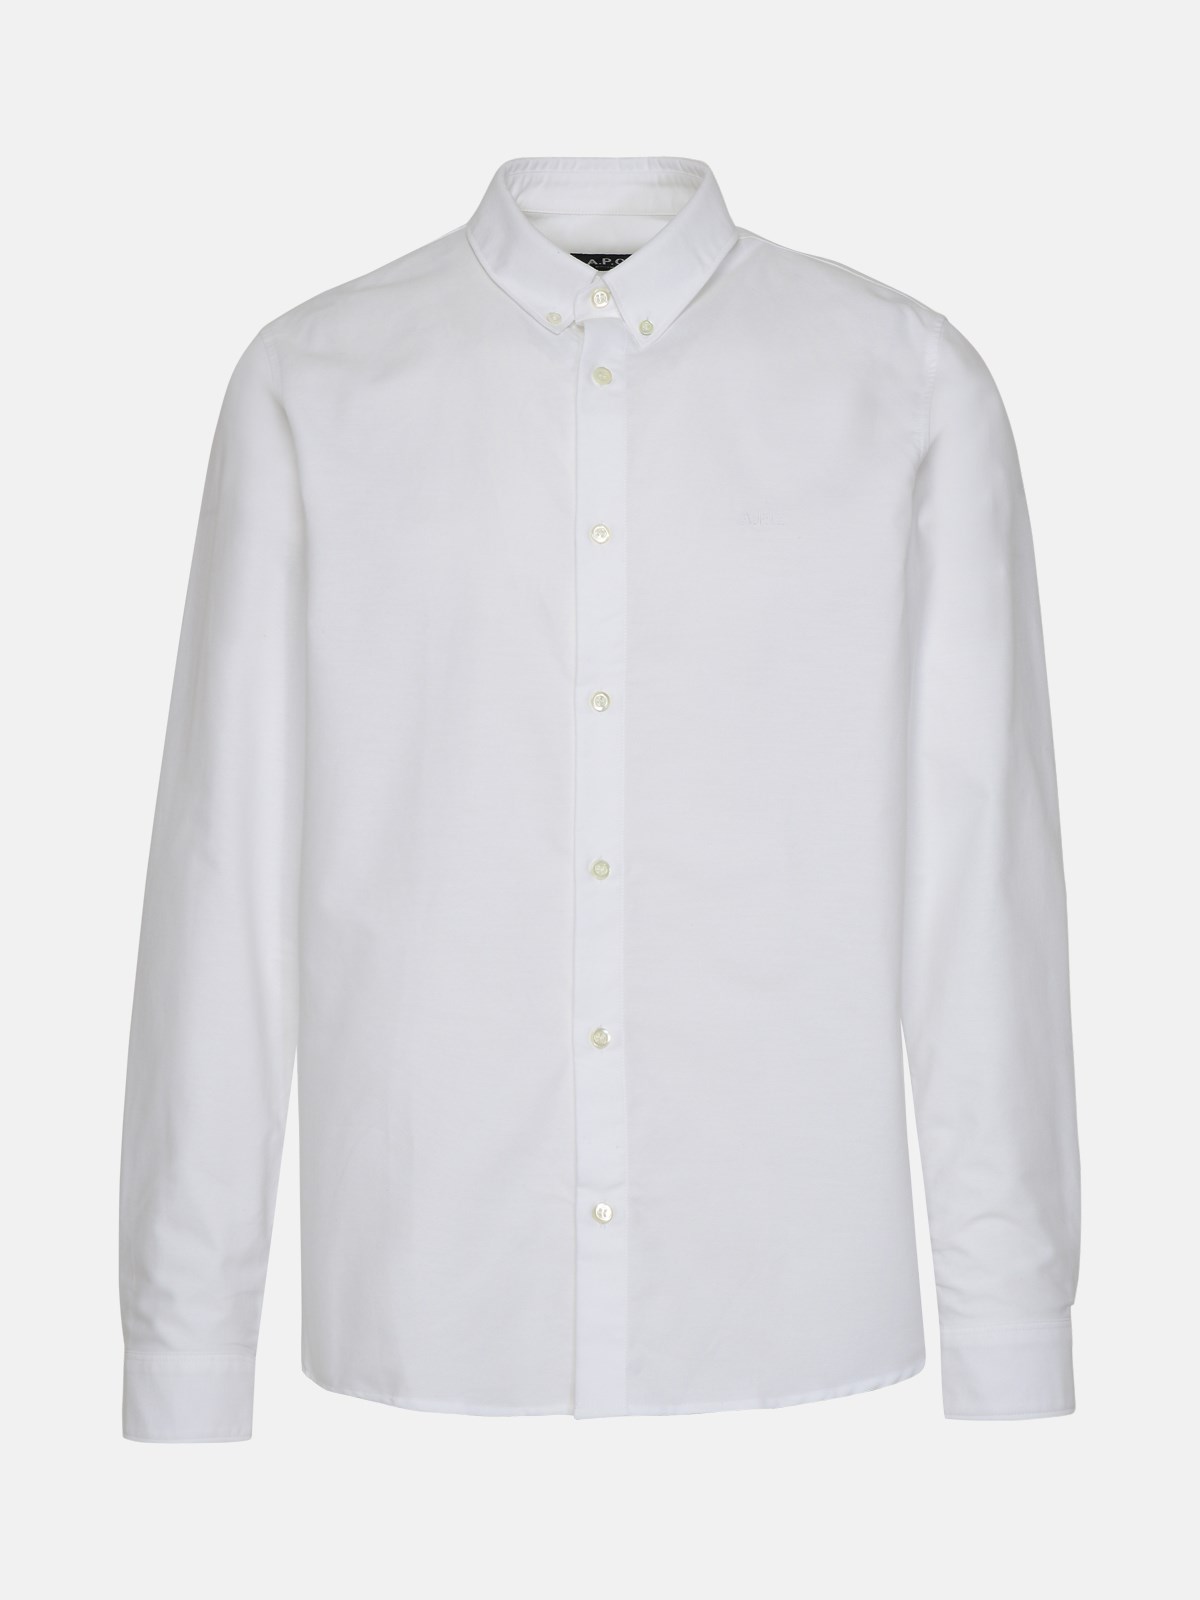 A.p.c. Kids' Greg White Cotton Shirt